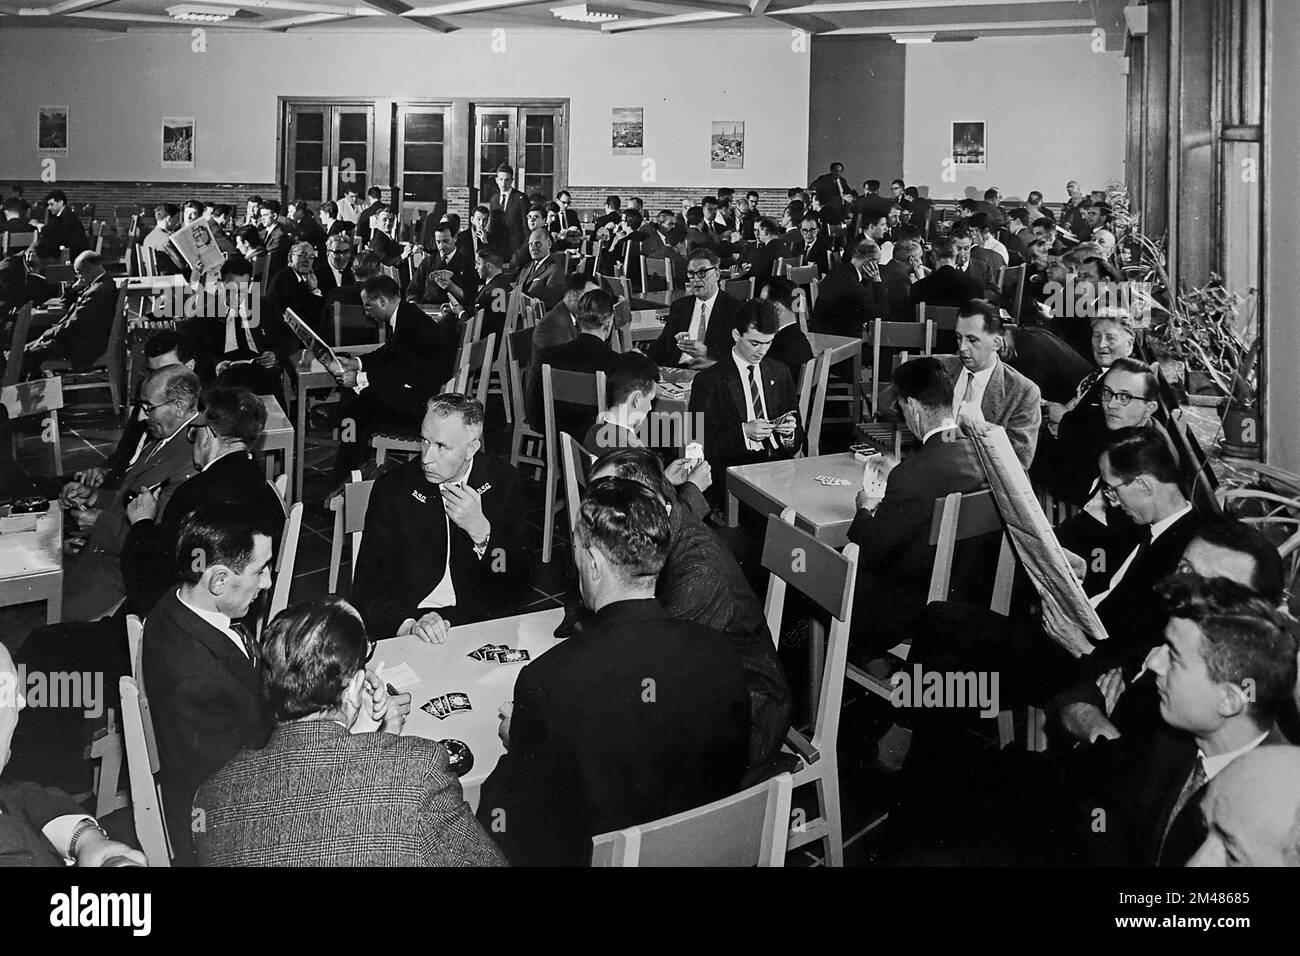 1960s salle de loisirs de la compagnie montrant des commis / employés de bureau jouant des cartes et lisant des journaux pendant la pause déjeuner Banque D'Images